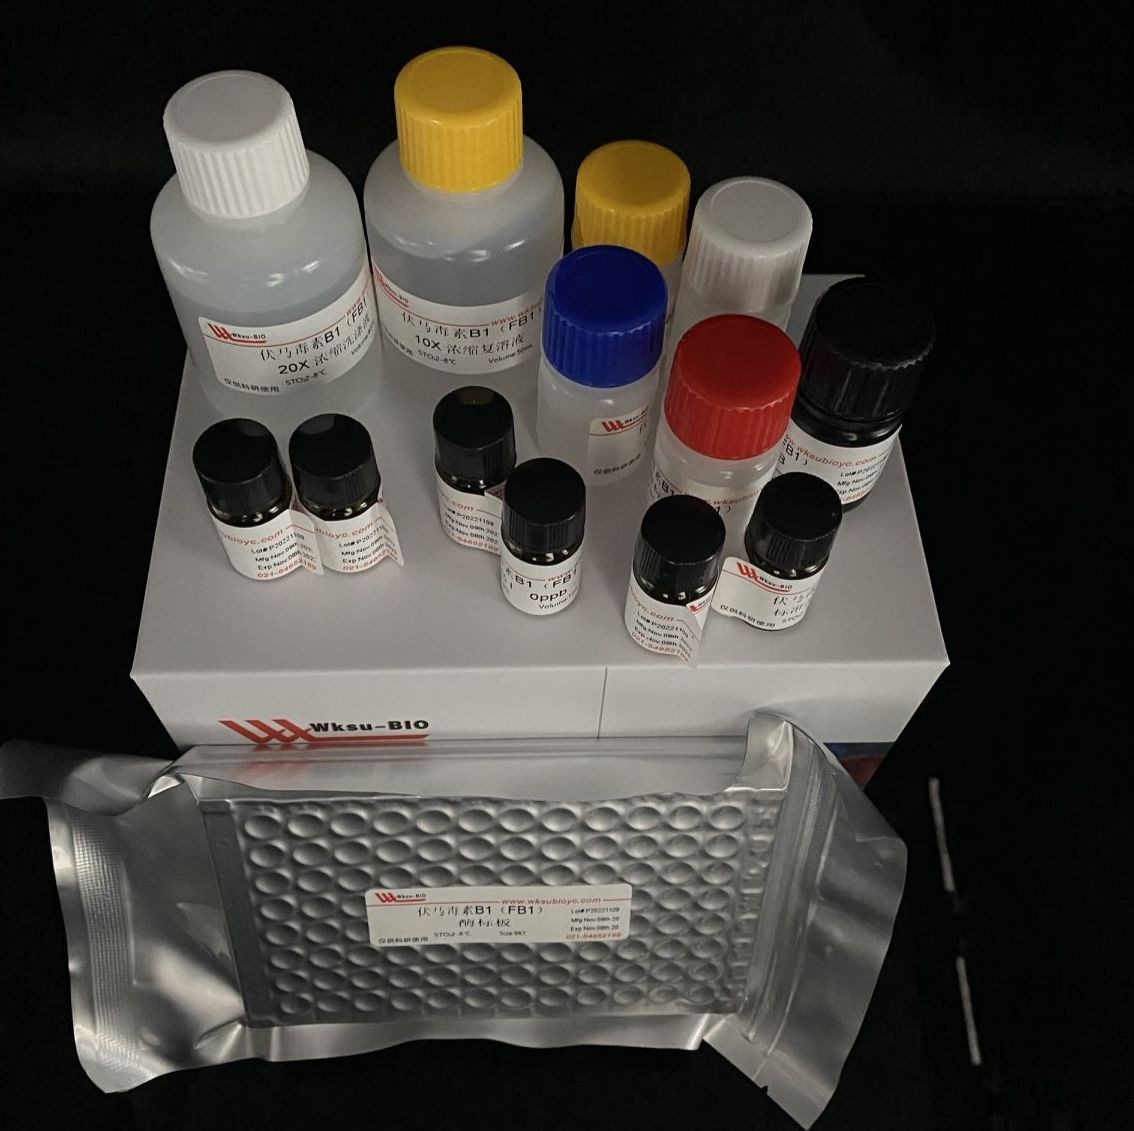 己糖激酶(HK)试剂盒,微板法